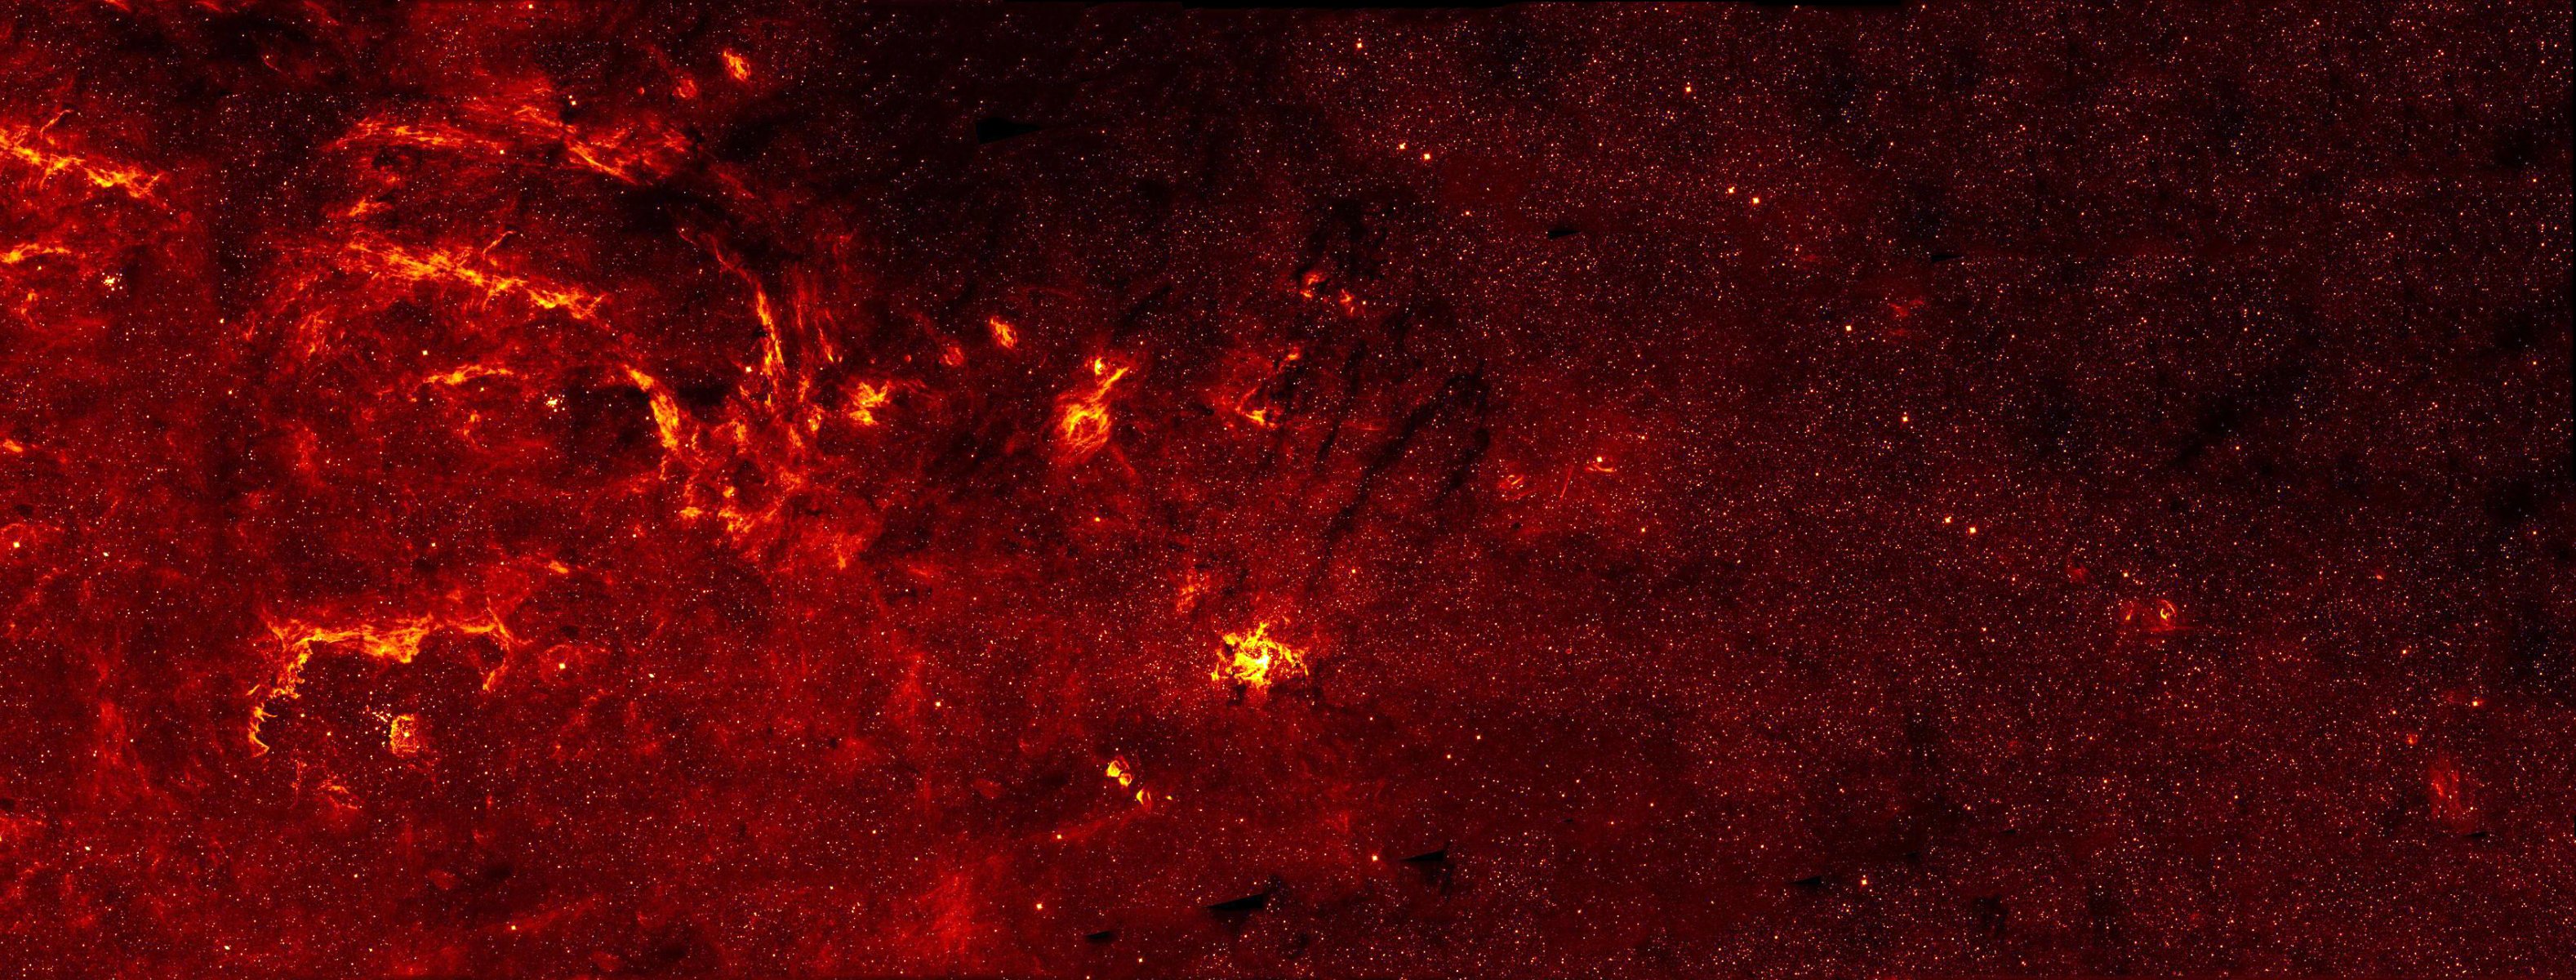 млечный путь галактика центр звезды